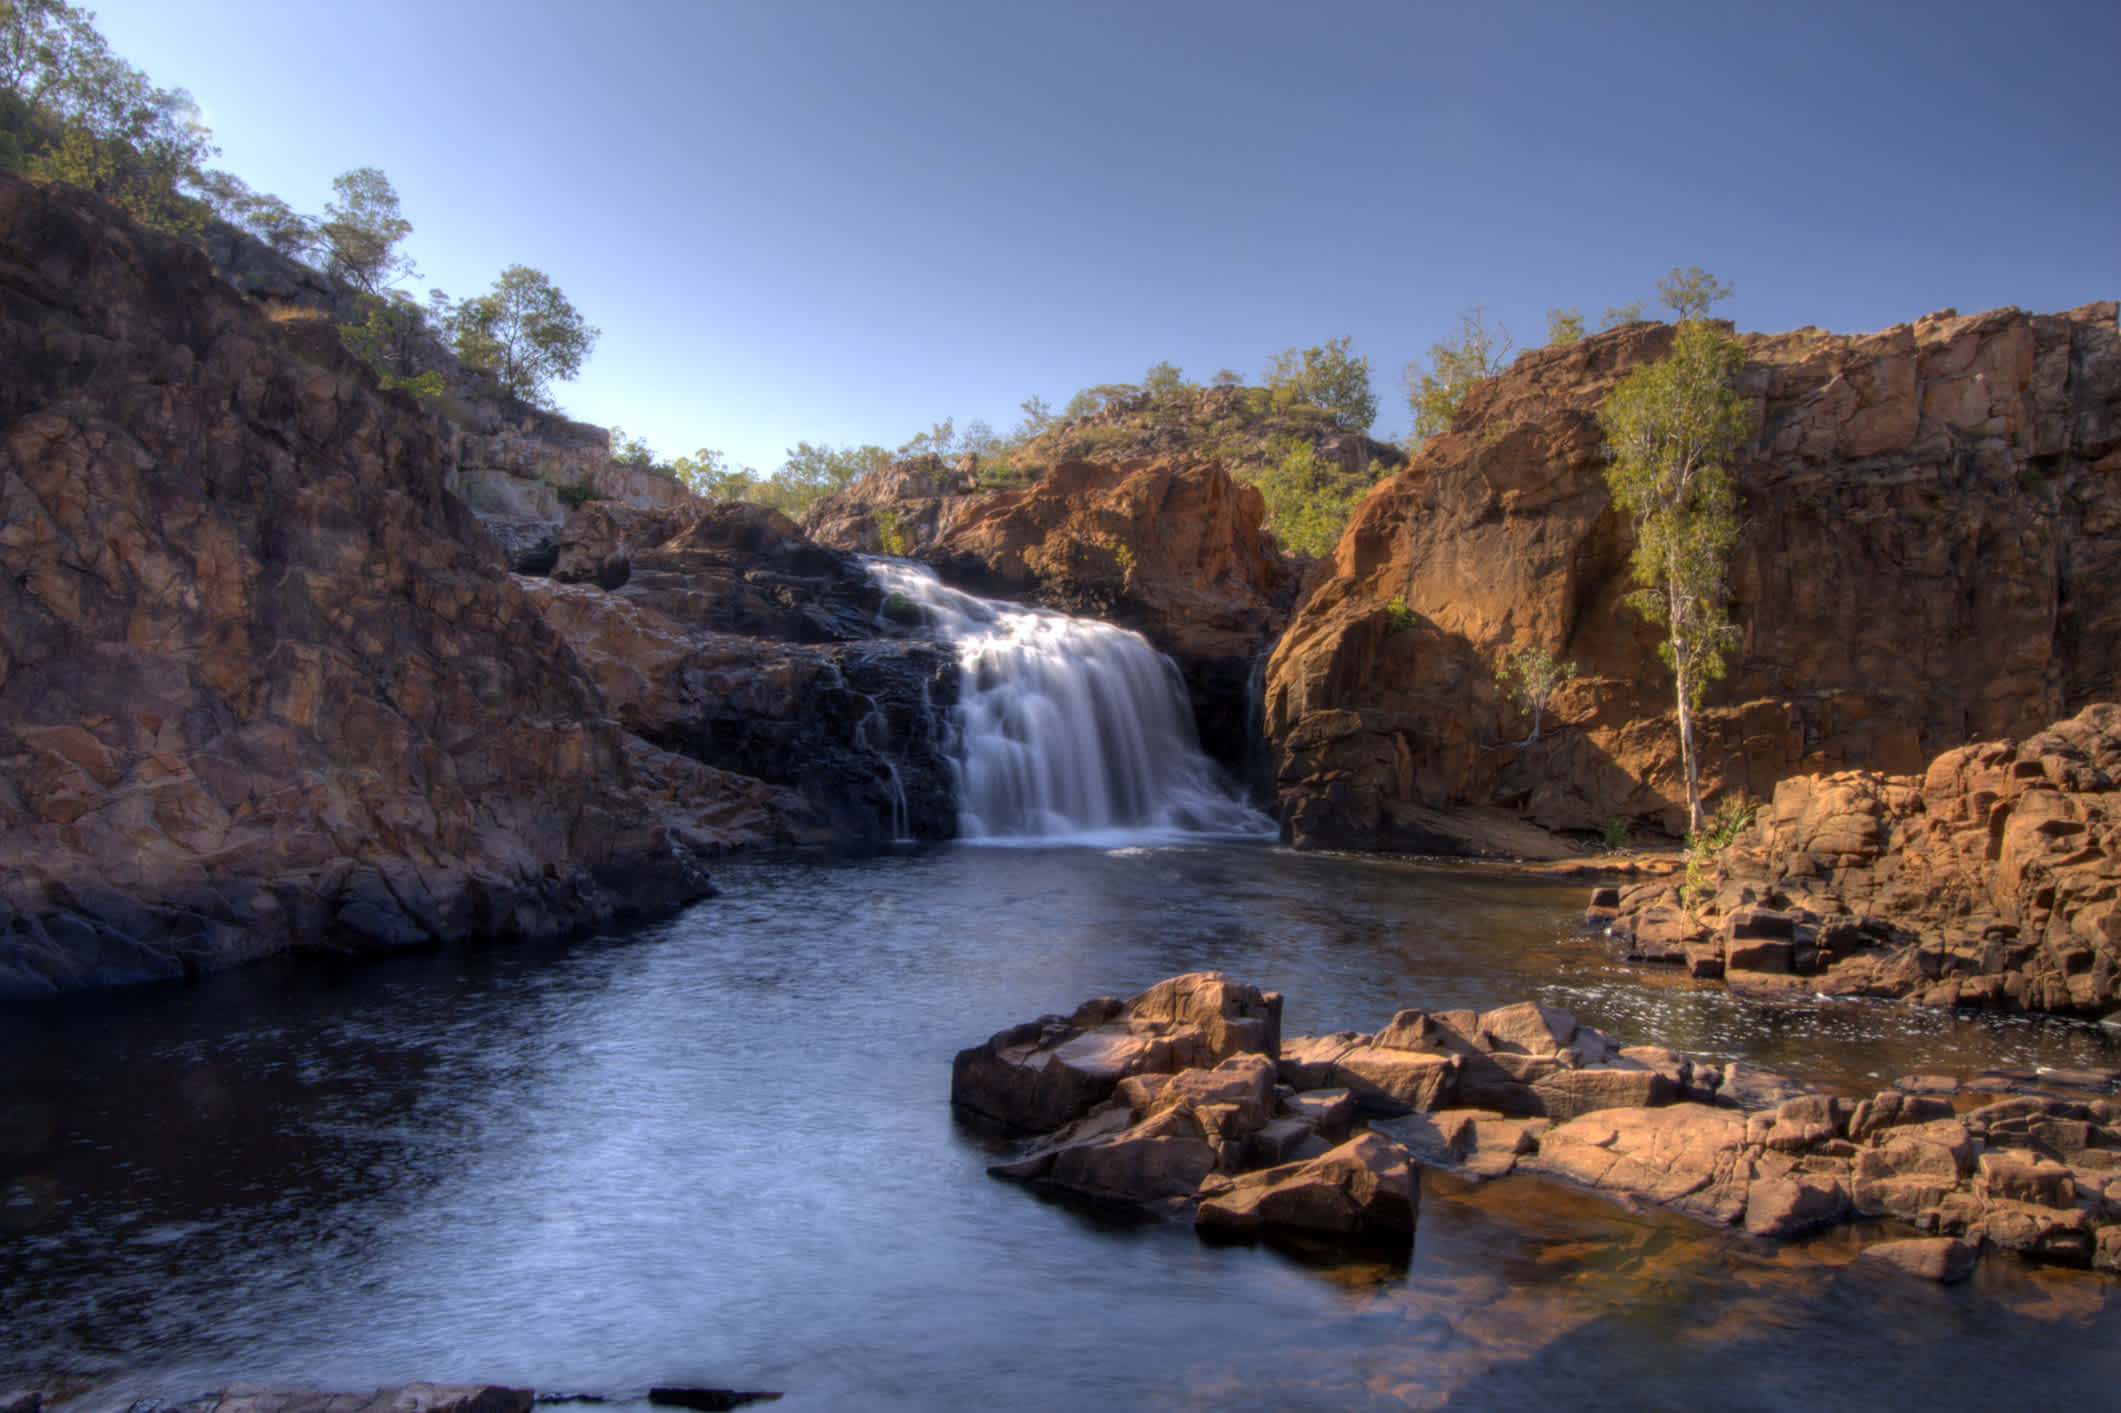 Die Edith Falls im australischen Nitmiluk-Nationalpark, Northern Territory, Australien. 

